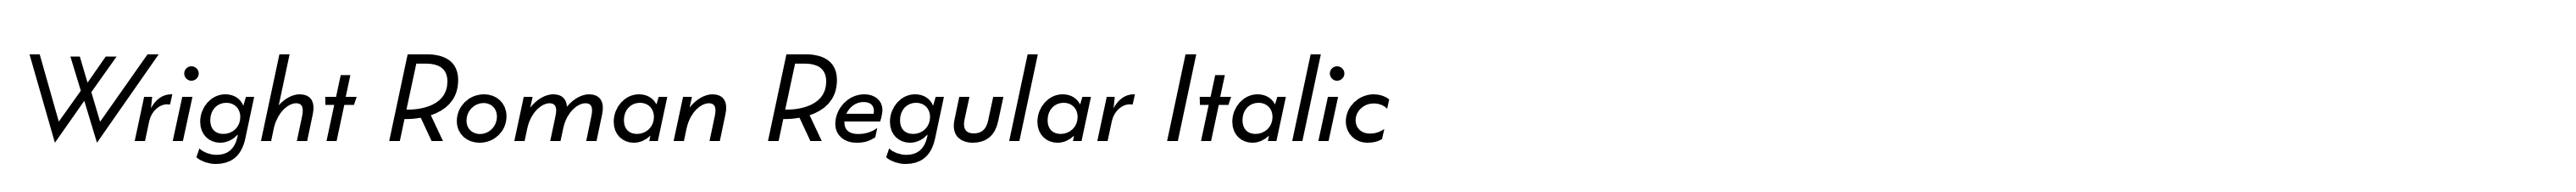 Wright Roman Regular Italic